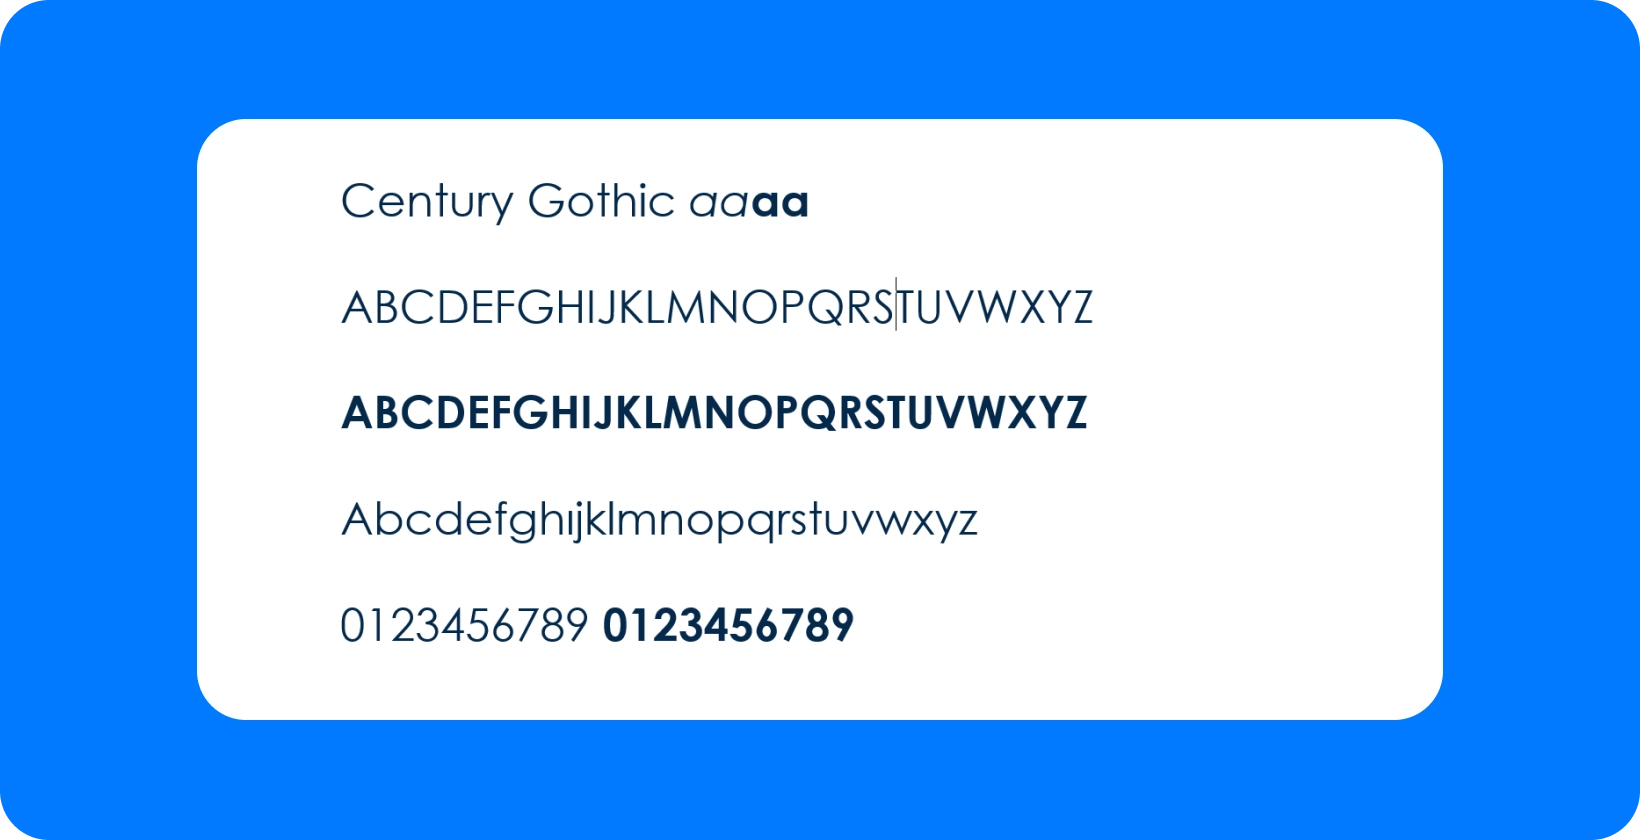 Century Gothic шрифт пропонує сучасний геометричний вигляд субтитрів, що ідеально підходить для читабельності на YouTube та Premiere Pro.